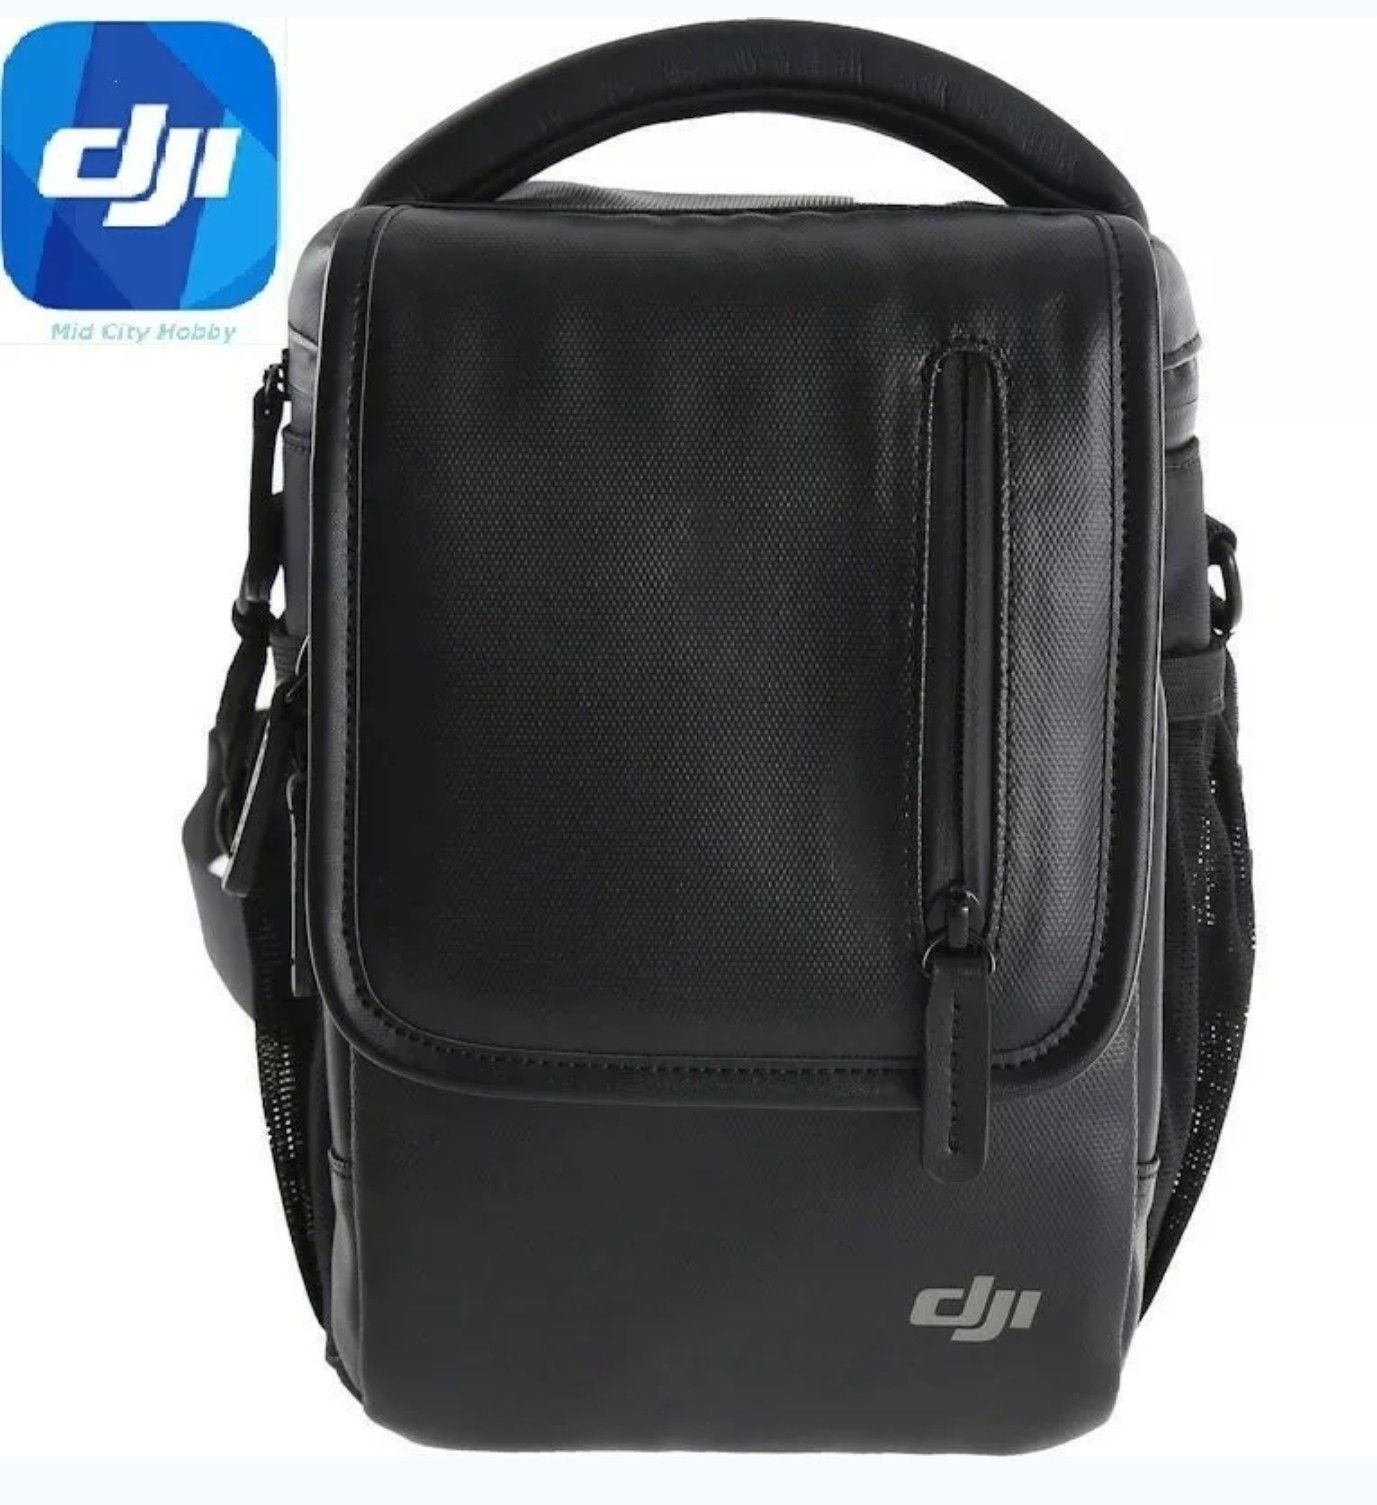 Genuine DJI Mavic Pro Shoulder Bag in Black - New